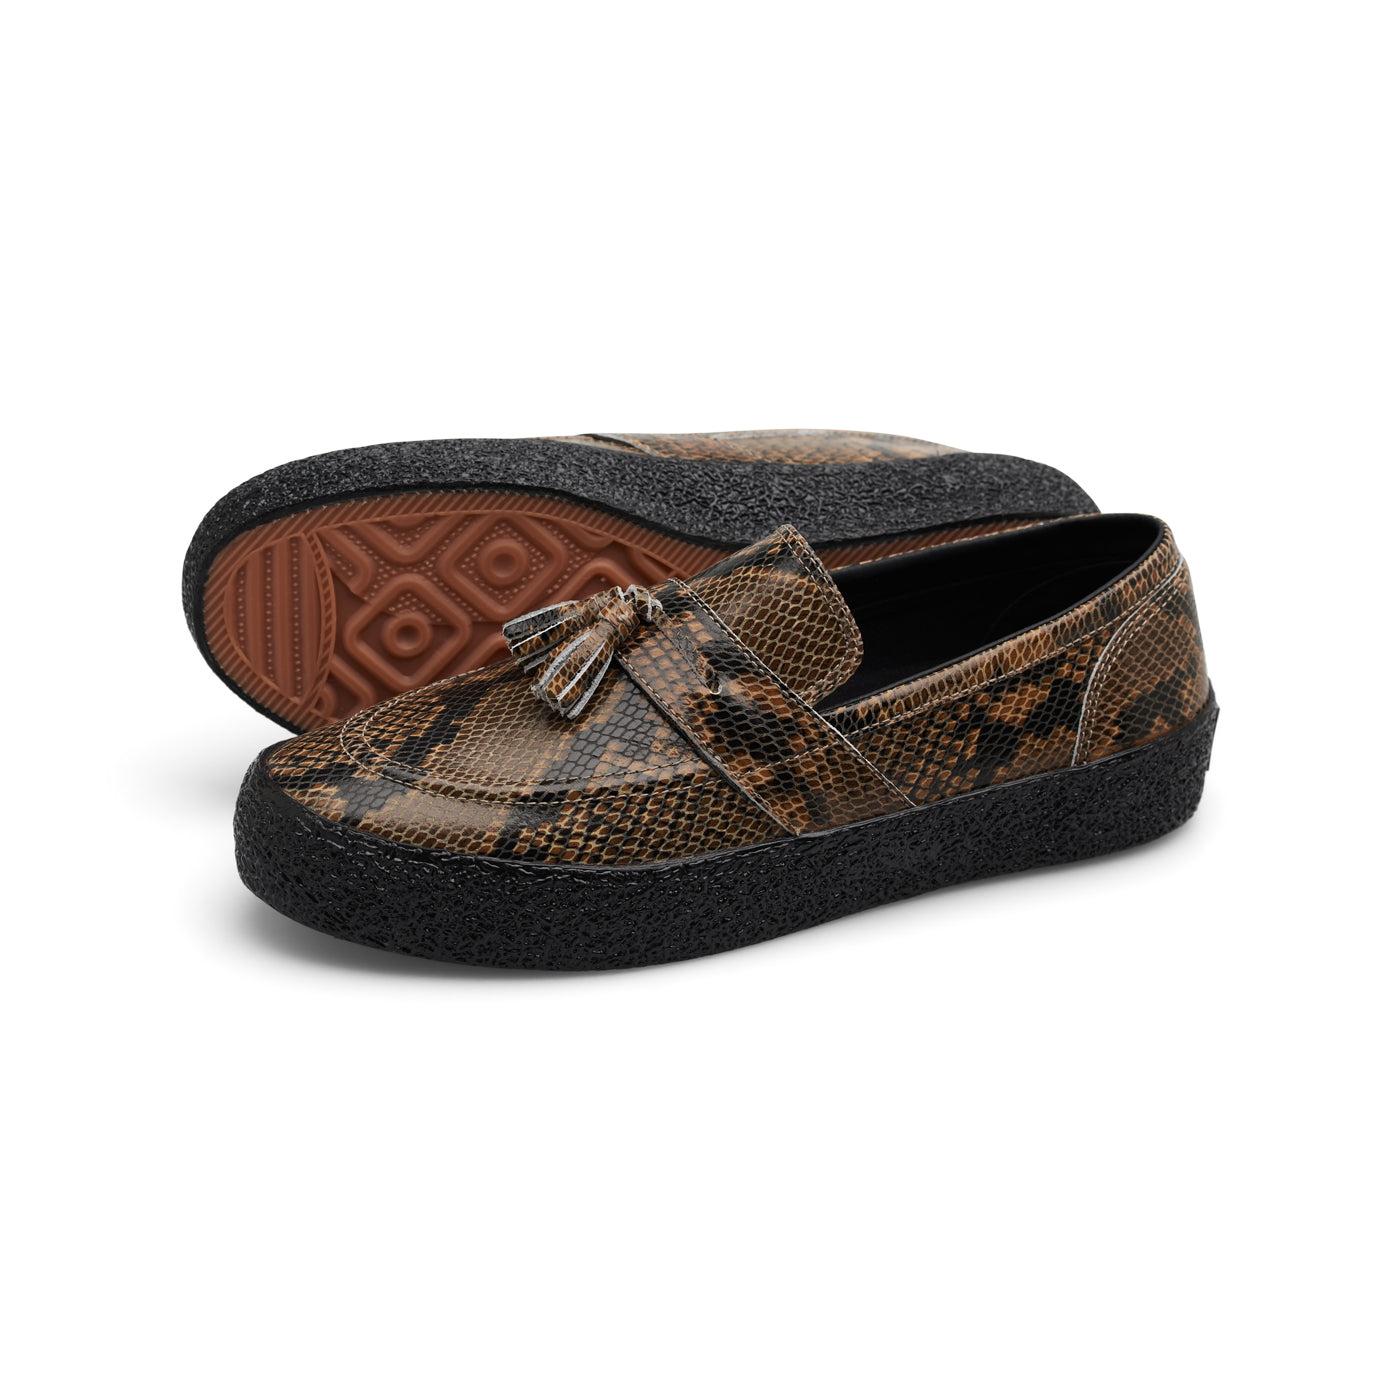 VM005-Loafer Leather (Brown Python/Black) – Last Resort AB